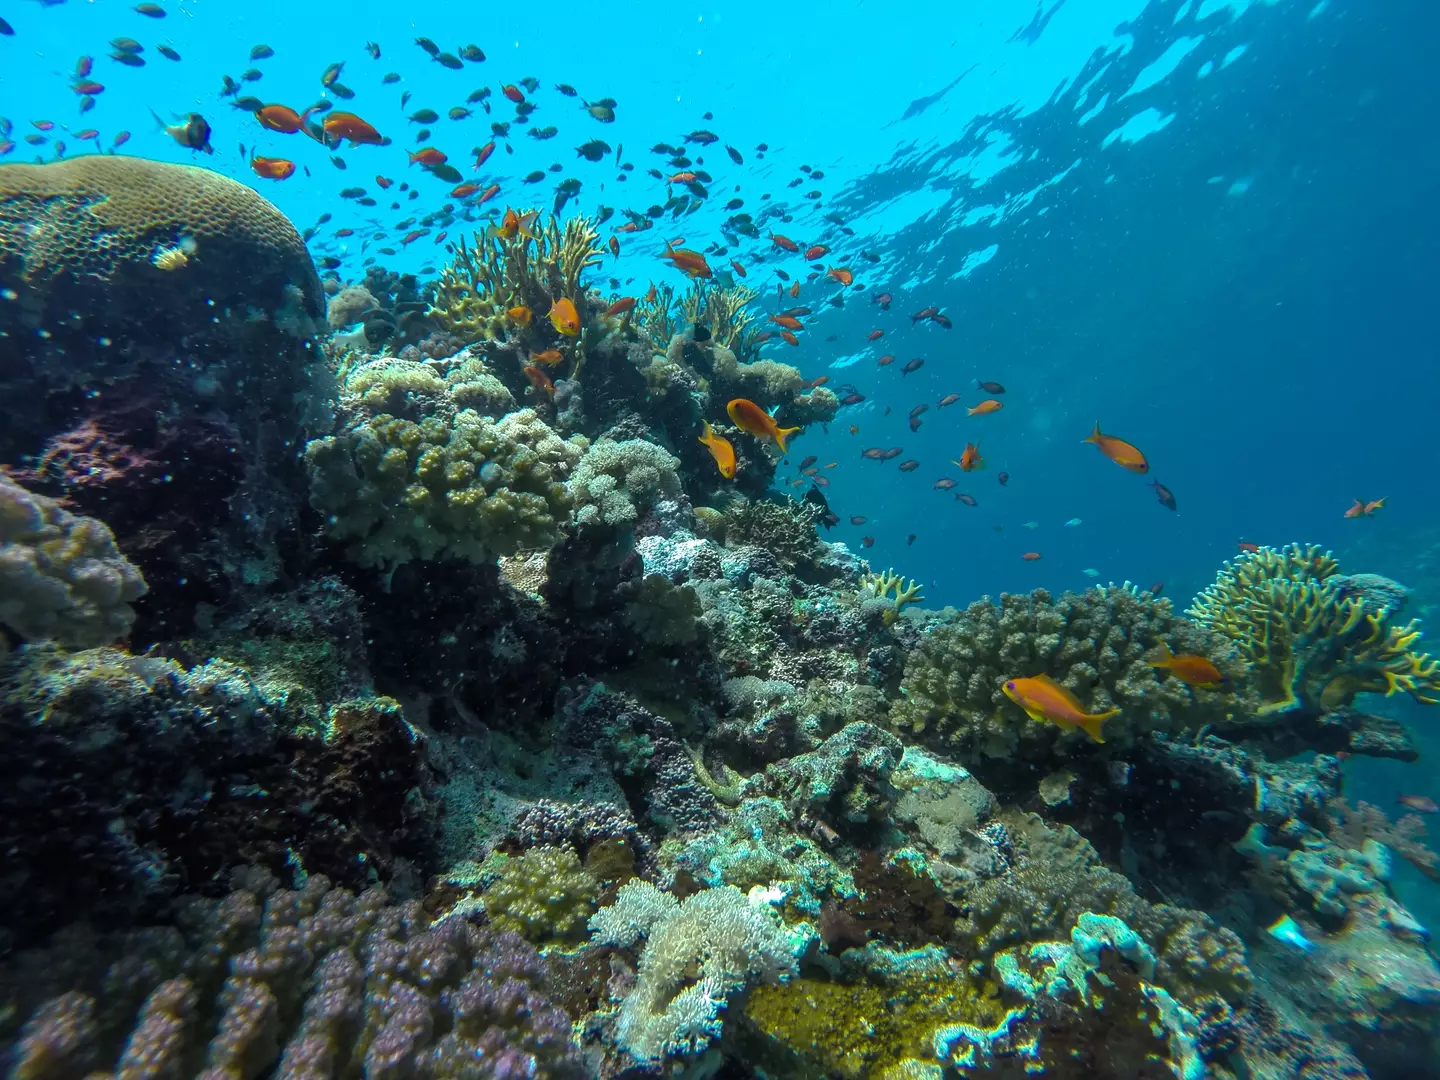 يعج البحر الأحمر بالحياة البحرية، ولكن ليس في كل مكان، وليس بالضبط في القاع.  (صورة مخزنة) 